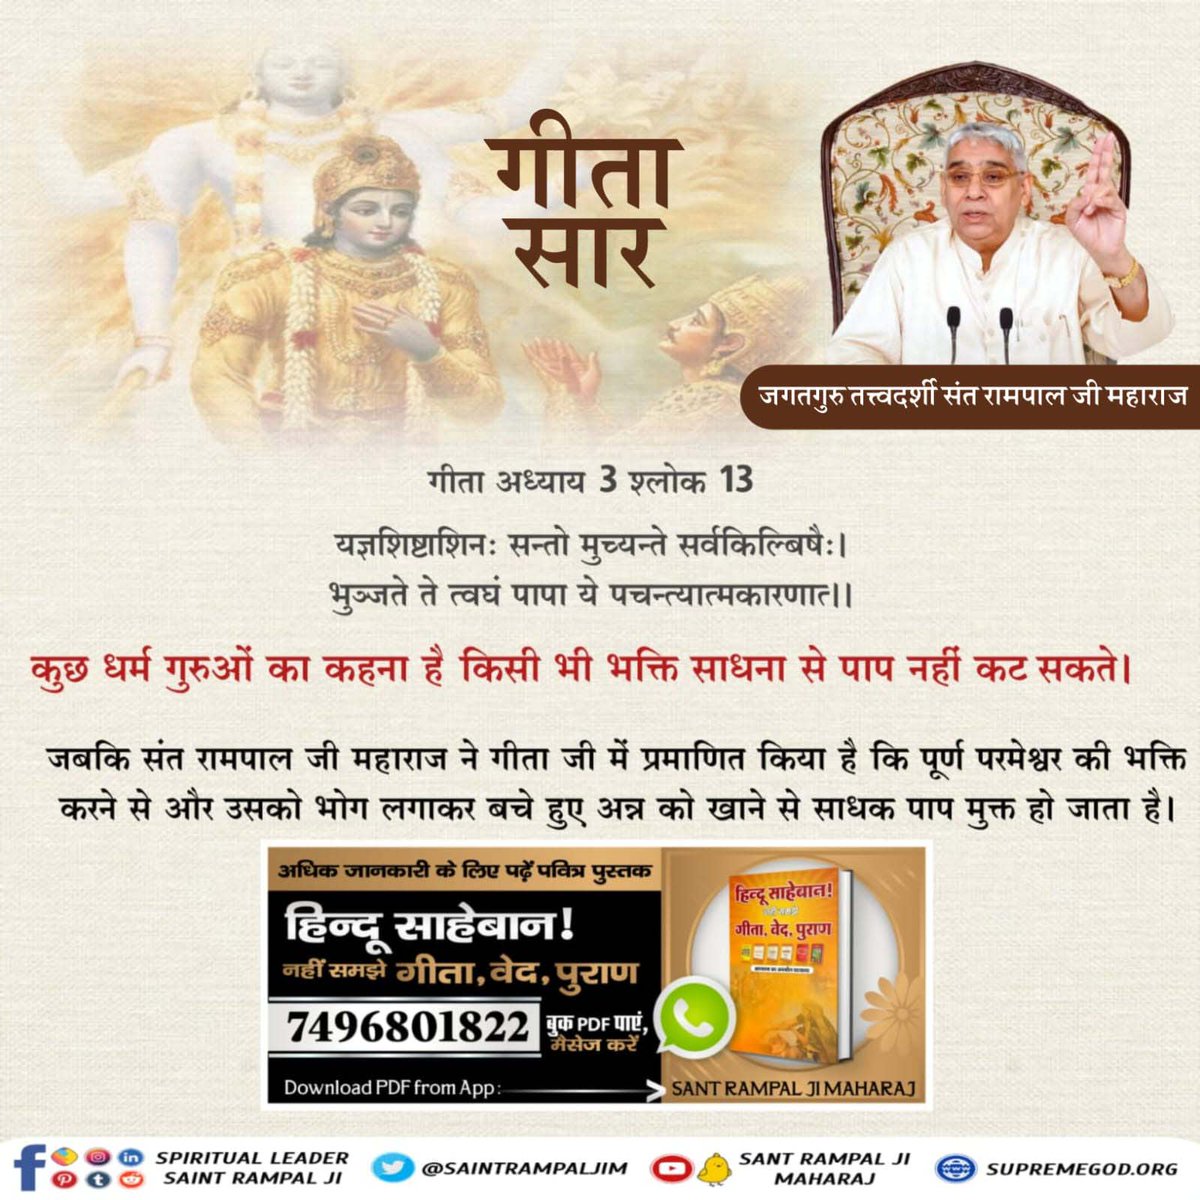 #ये_है_गीता_का_ज्ञान वास्तव में शाश्वत तो पूर्ण परमात्मा है अध्याय 15 श्लोक 17 जानने के लिए डाउनलोड करें Official App 'Sant Rampal Ji Maharaj' Tattvadarshi Sant Rampal Ji @ajitanjum @1stIndiaNews @AnilKapoor